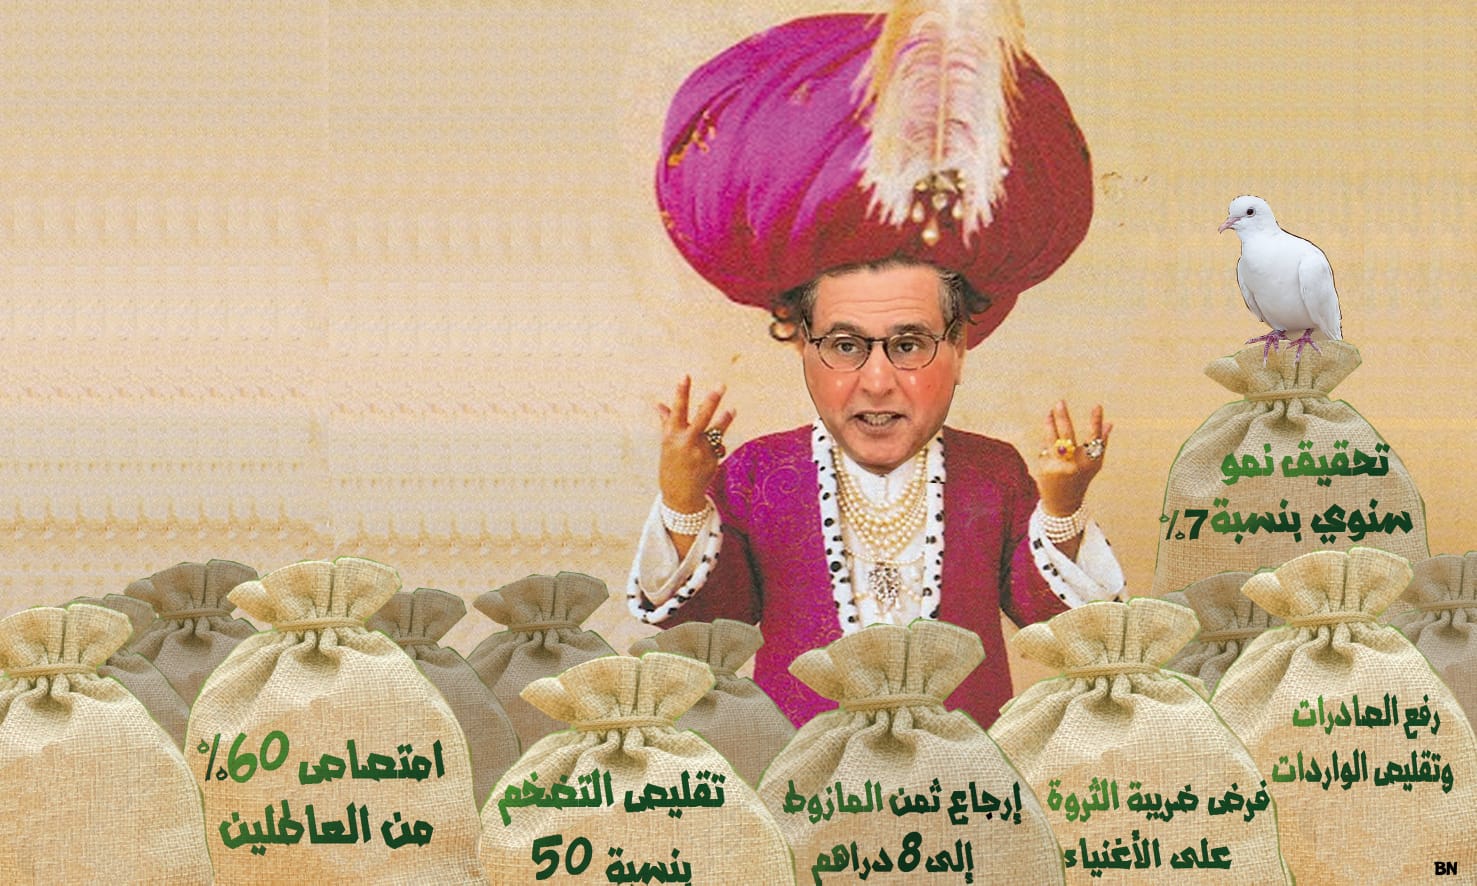 خمس وصفات لأخنوش لإنقاذ المغرب من الانحباس الاقتصادي